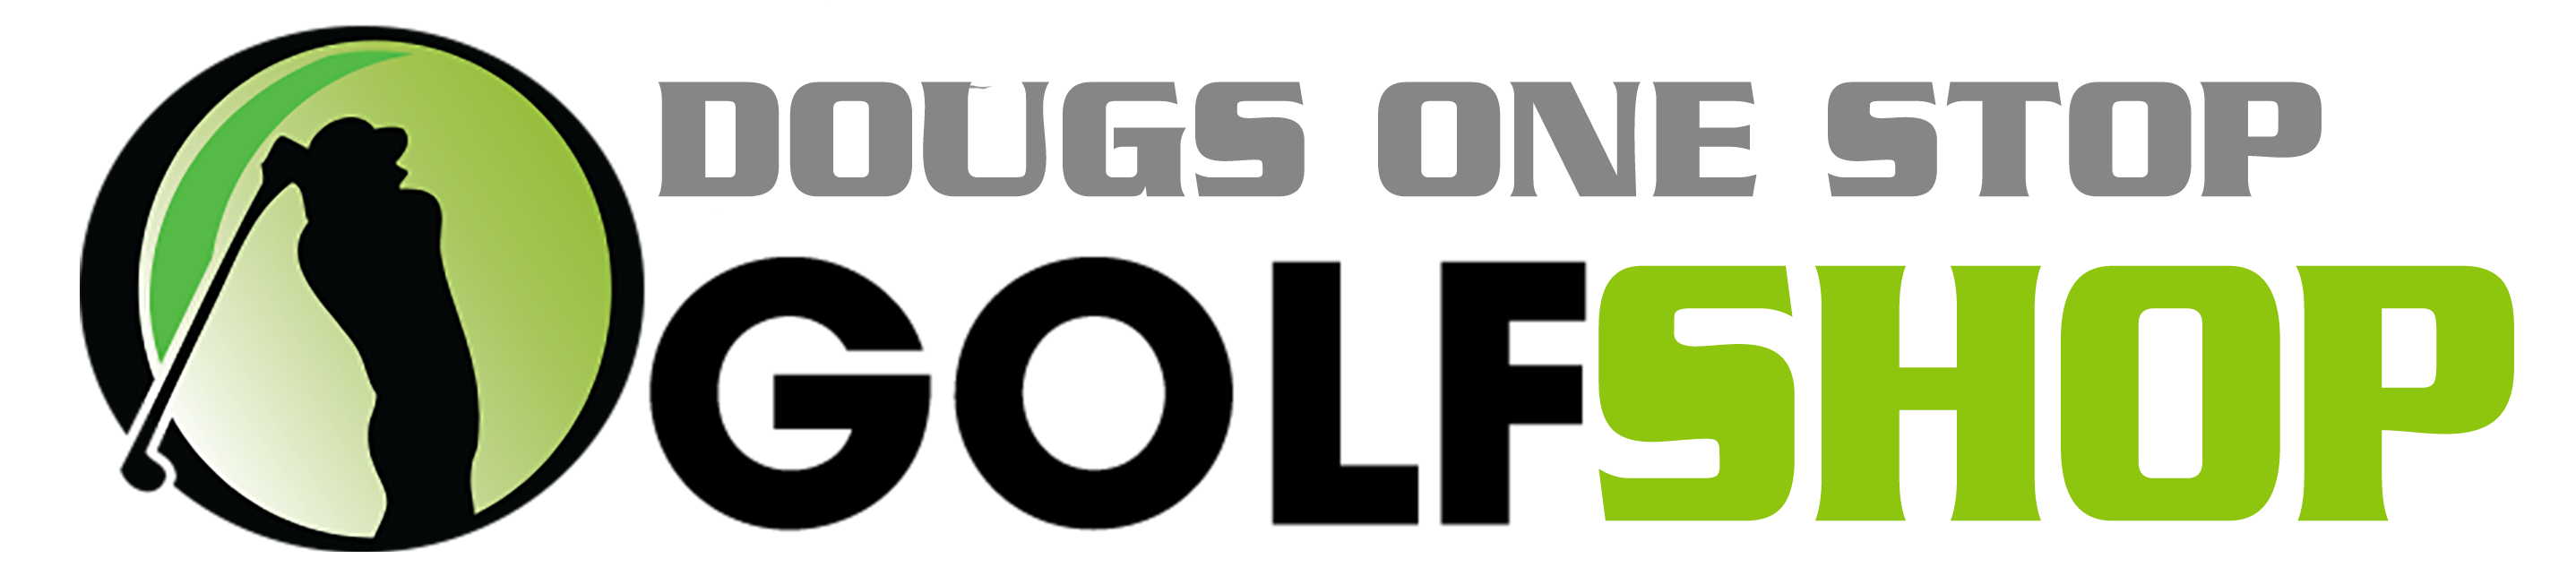 Company Logo For DougsOneStopGolfShop.com'